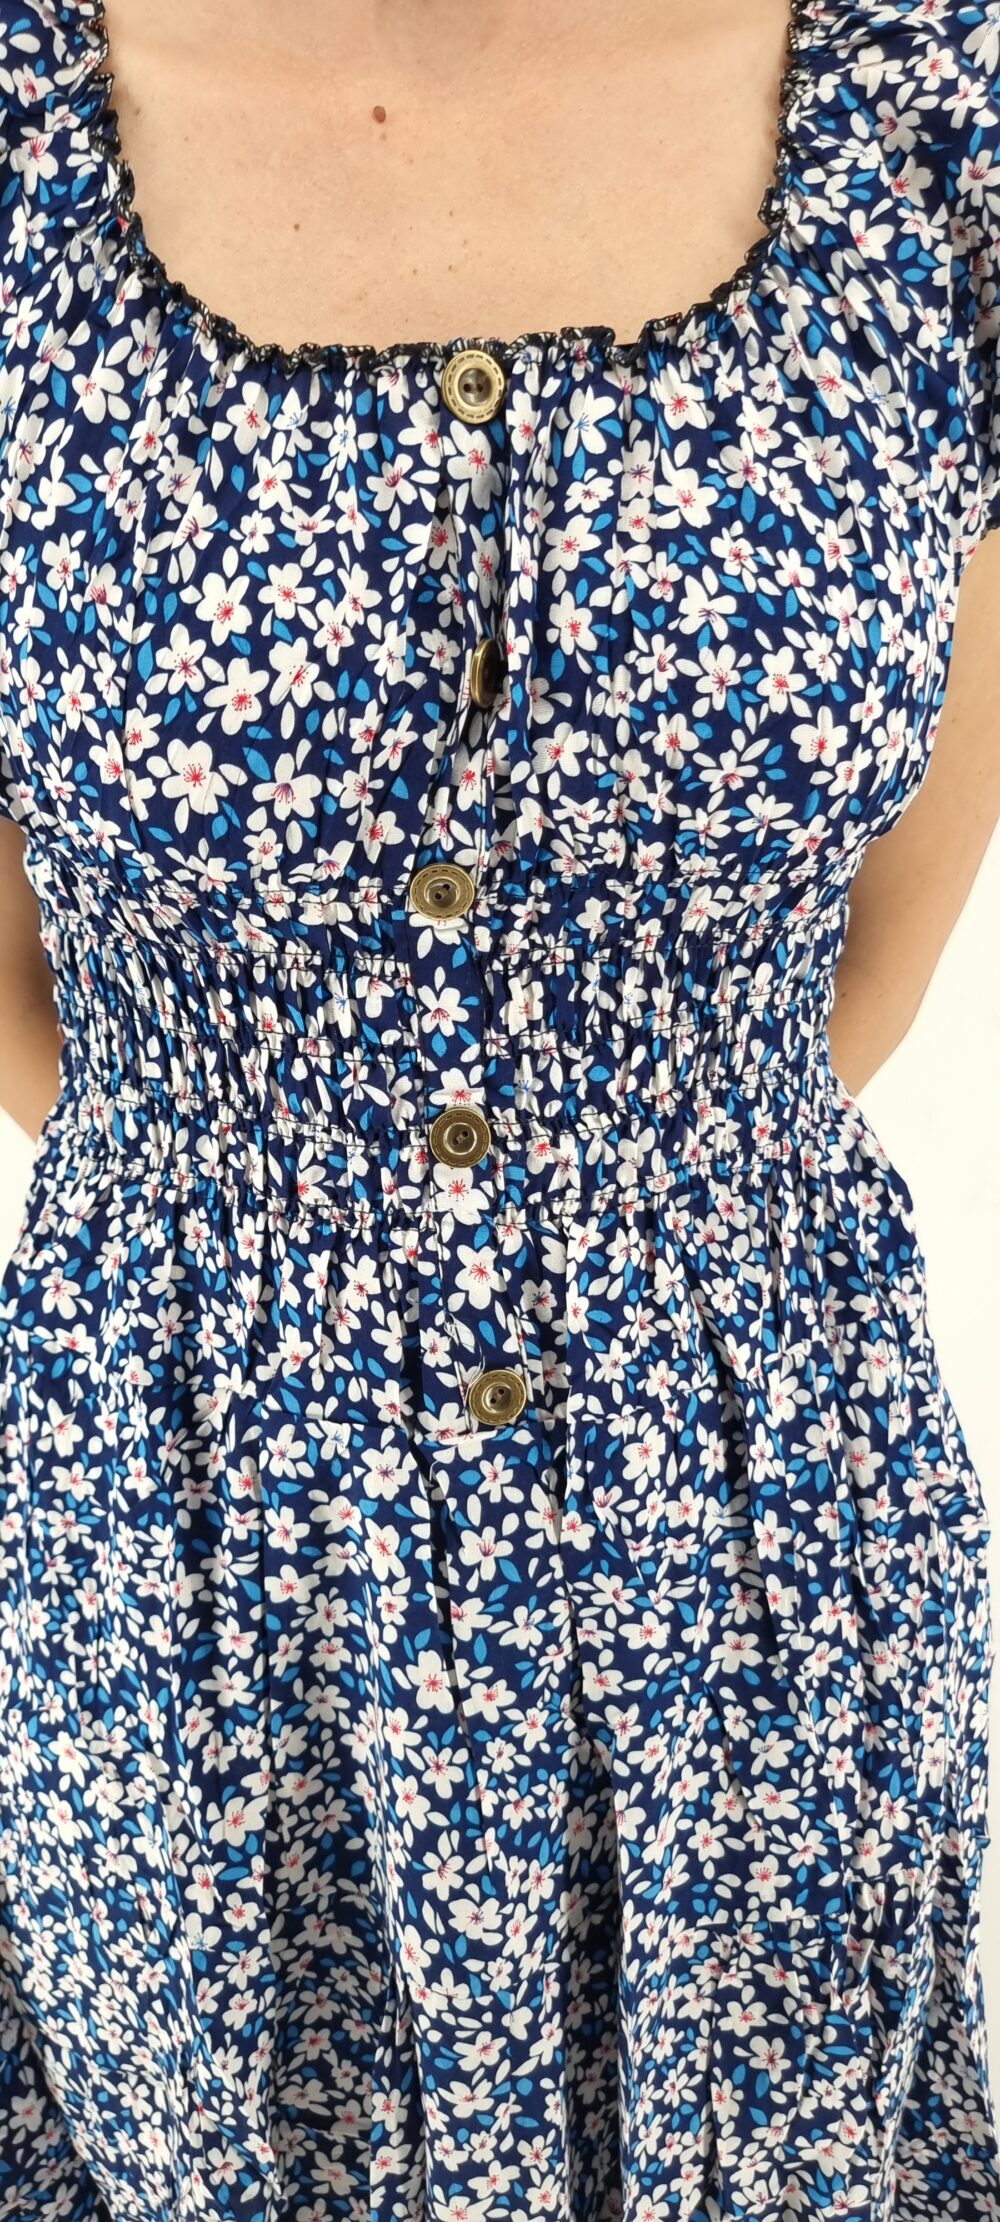 Φόρεμα φλοράλ midi με σφιγγοφωλιά και διακοσμητικά κουμπιά μπλε άσπρο